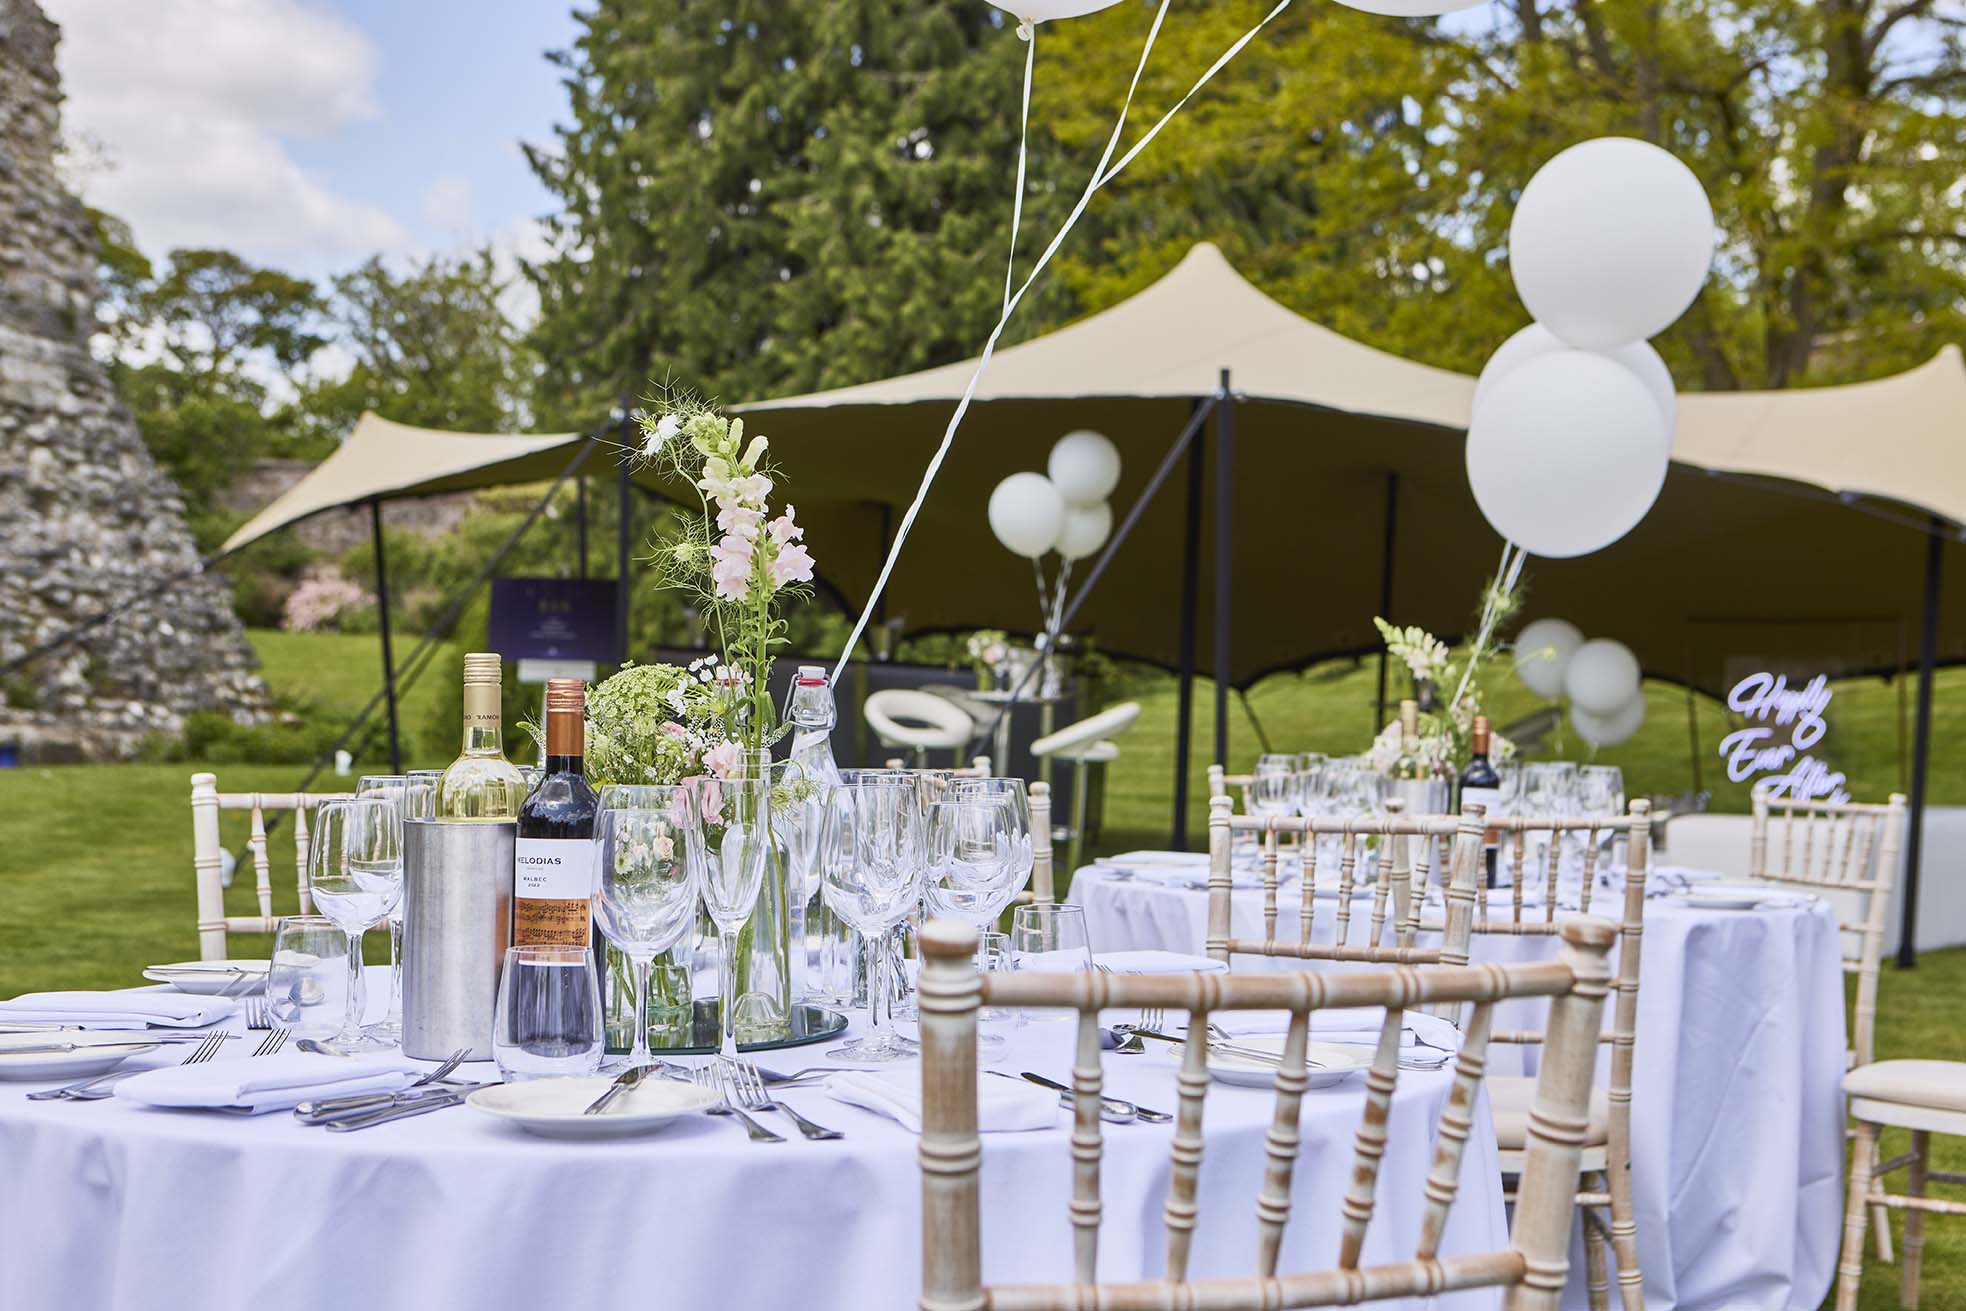 Outdoor wedding celebrations at Farnham Castle in Surrey